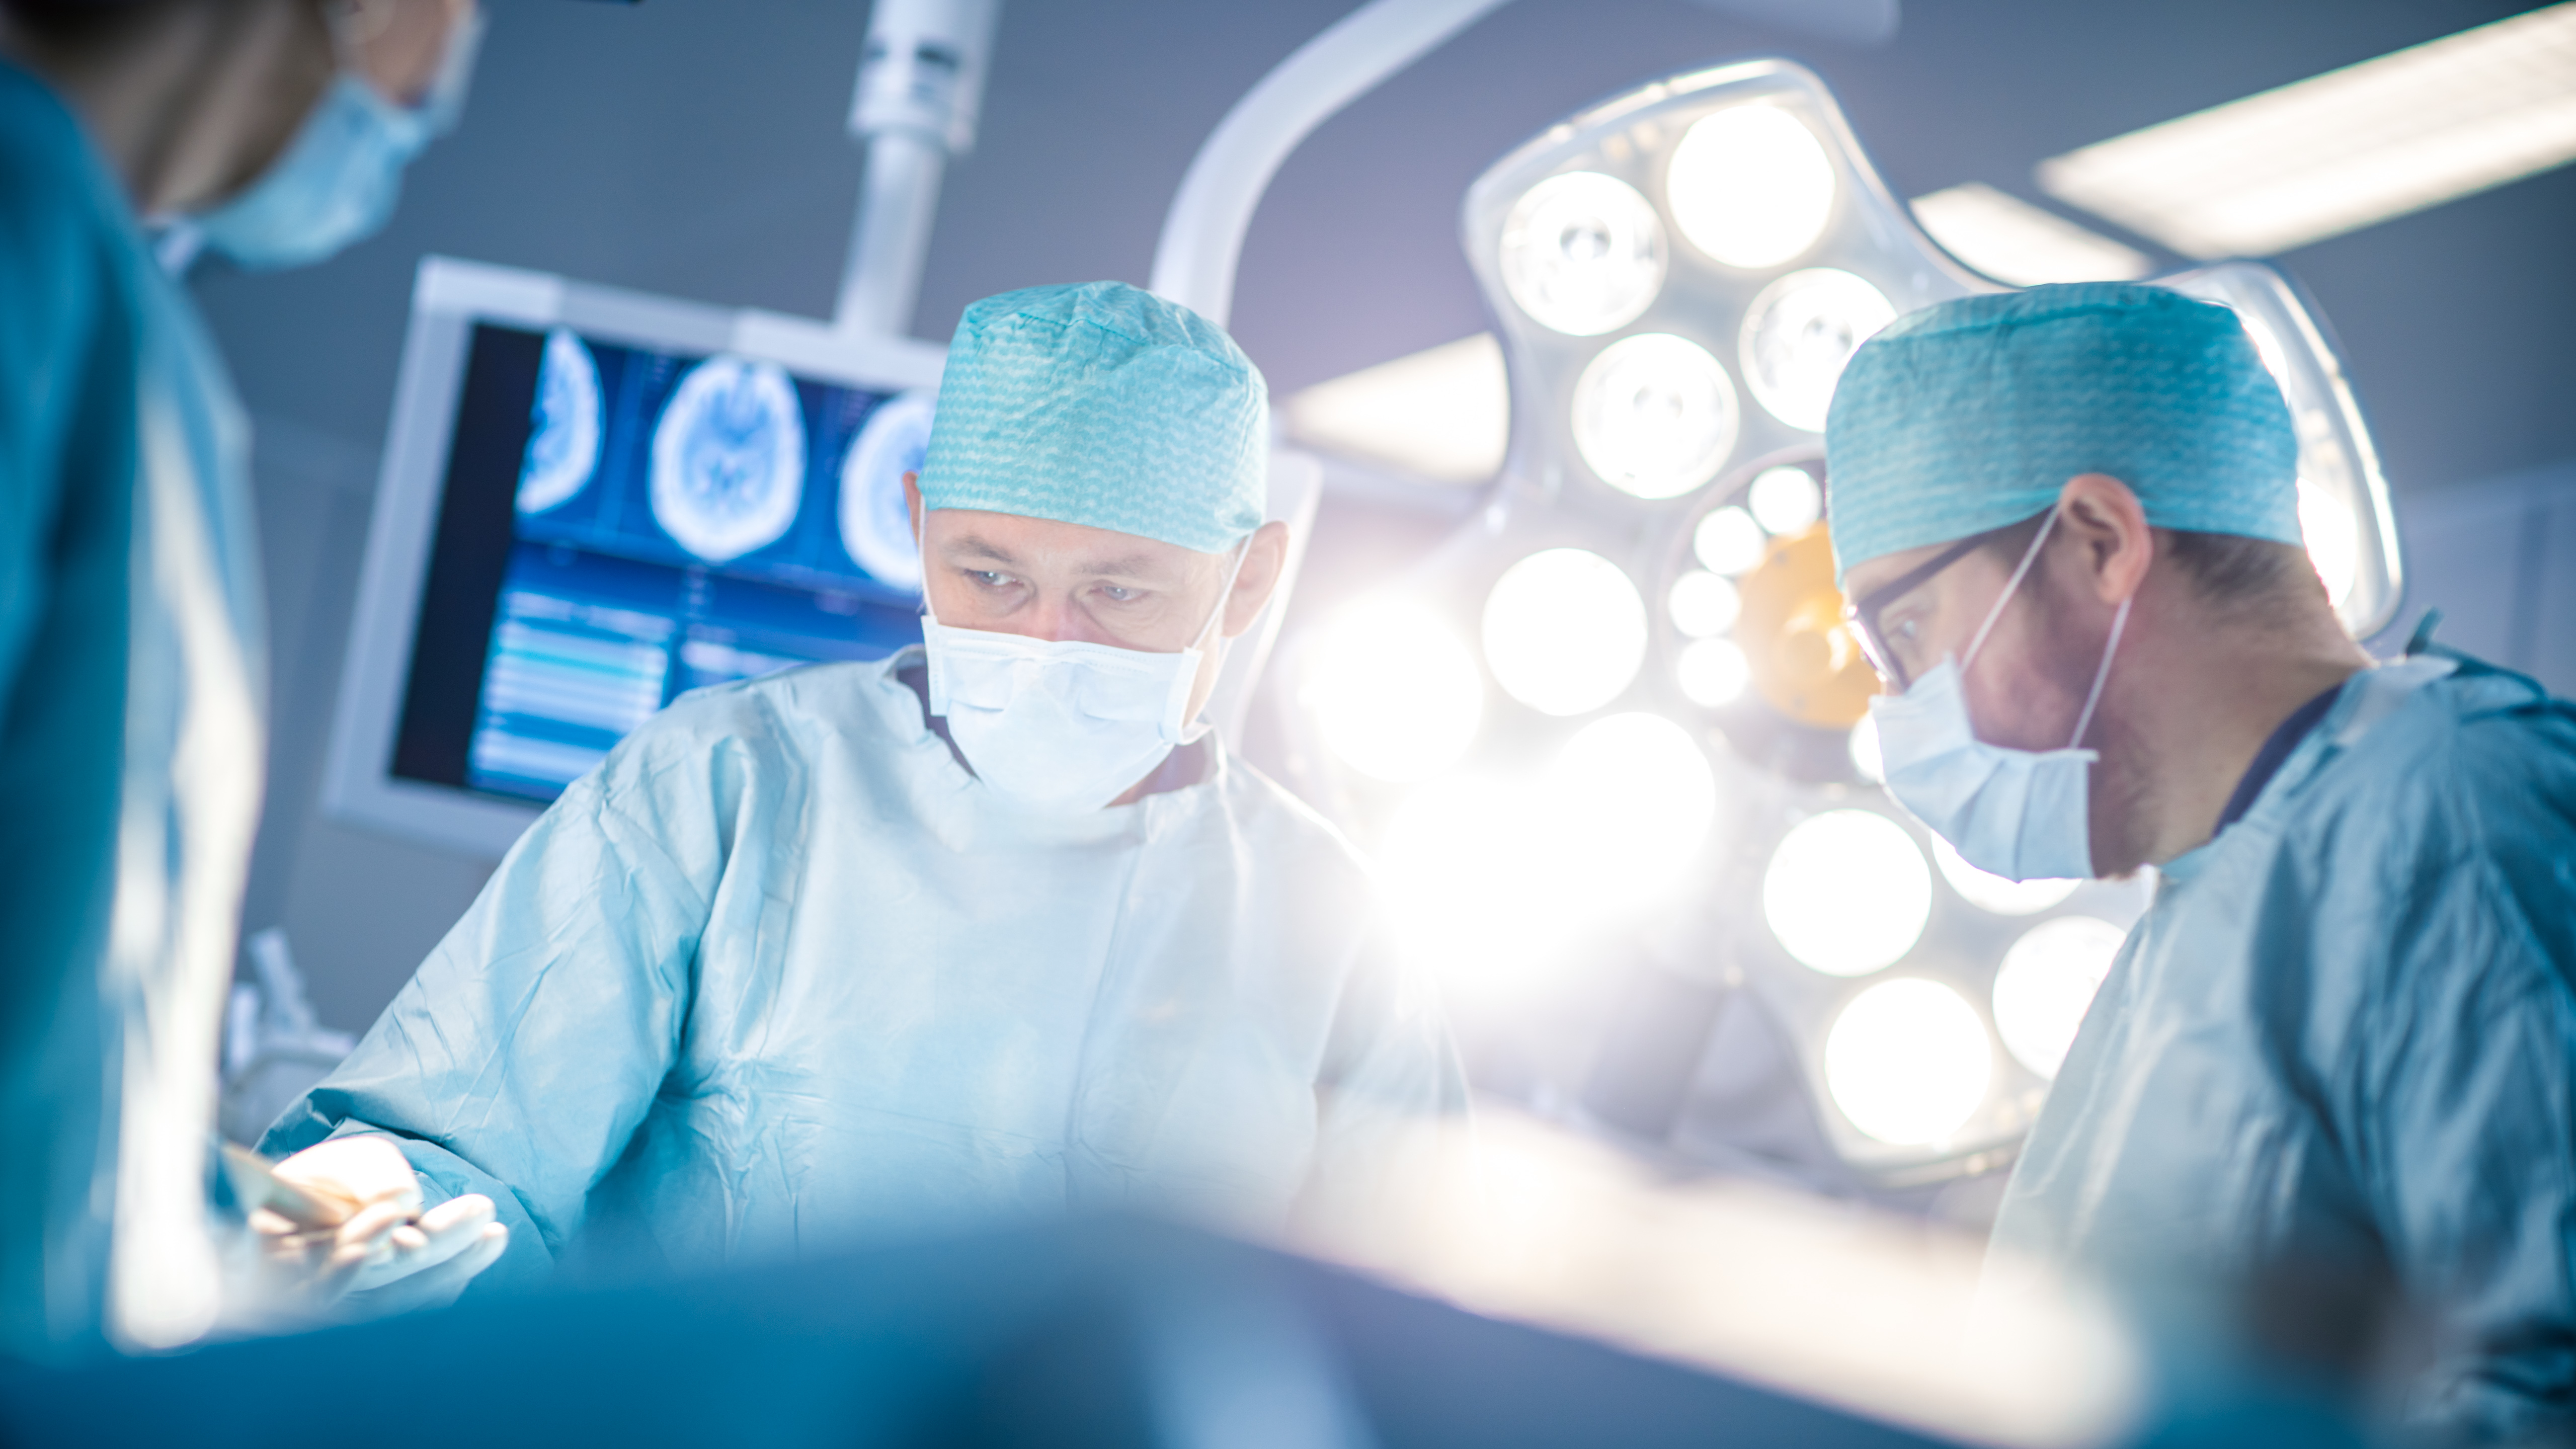 Is hemithyroidectomy surgery safe?